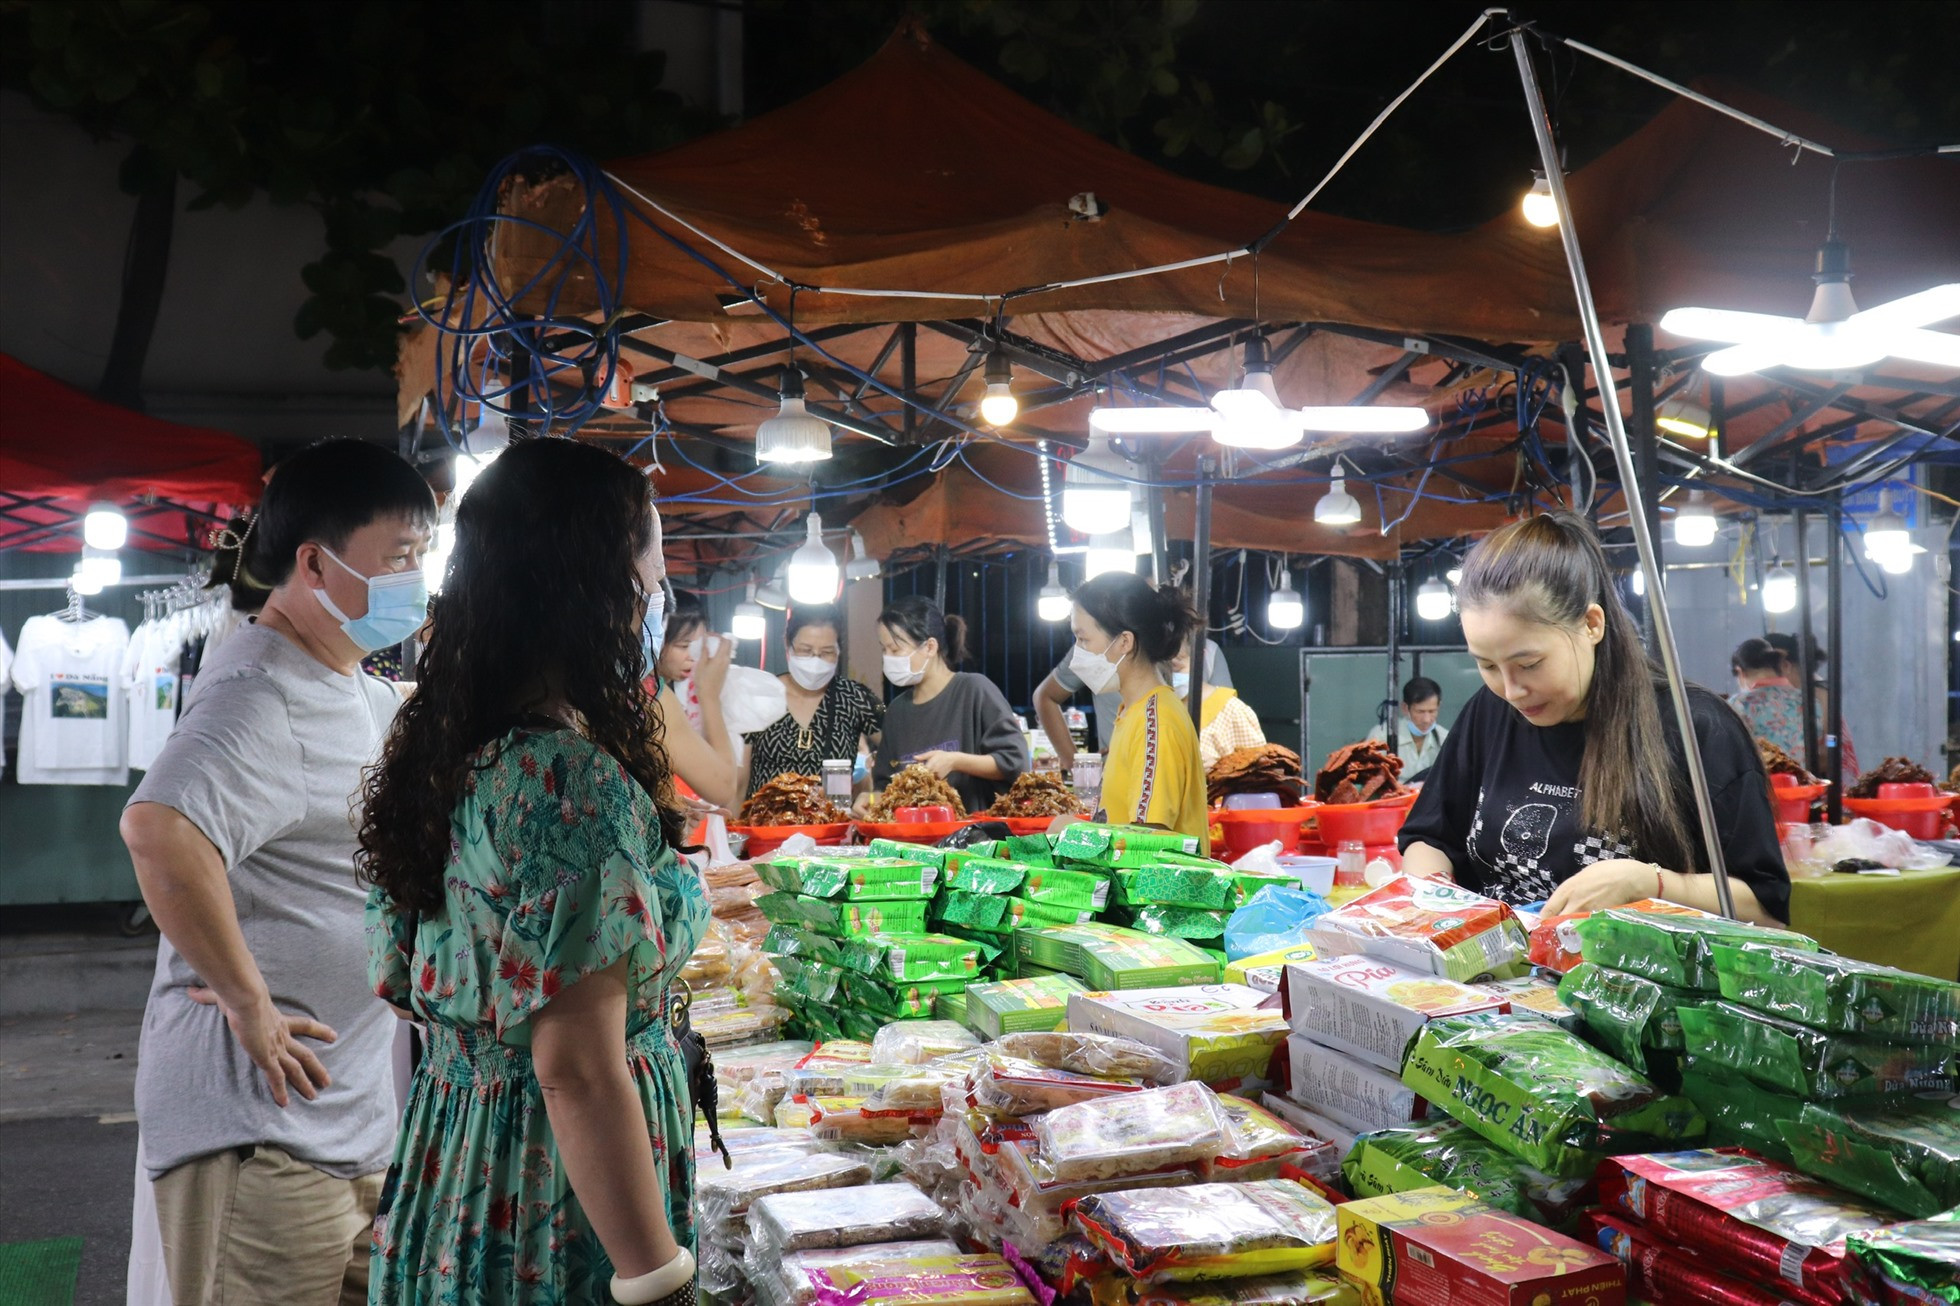 Tự ý đuổi du khách, người giữ xe chợ đêm ở Đà Nẵng bị phạt tiền